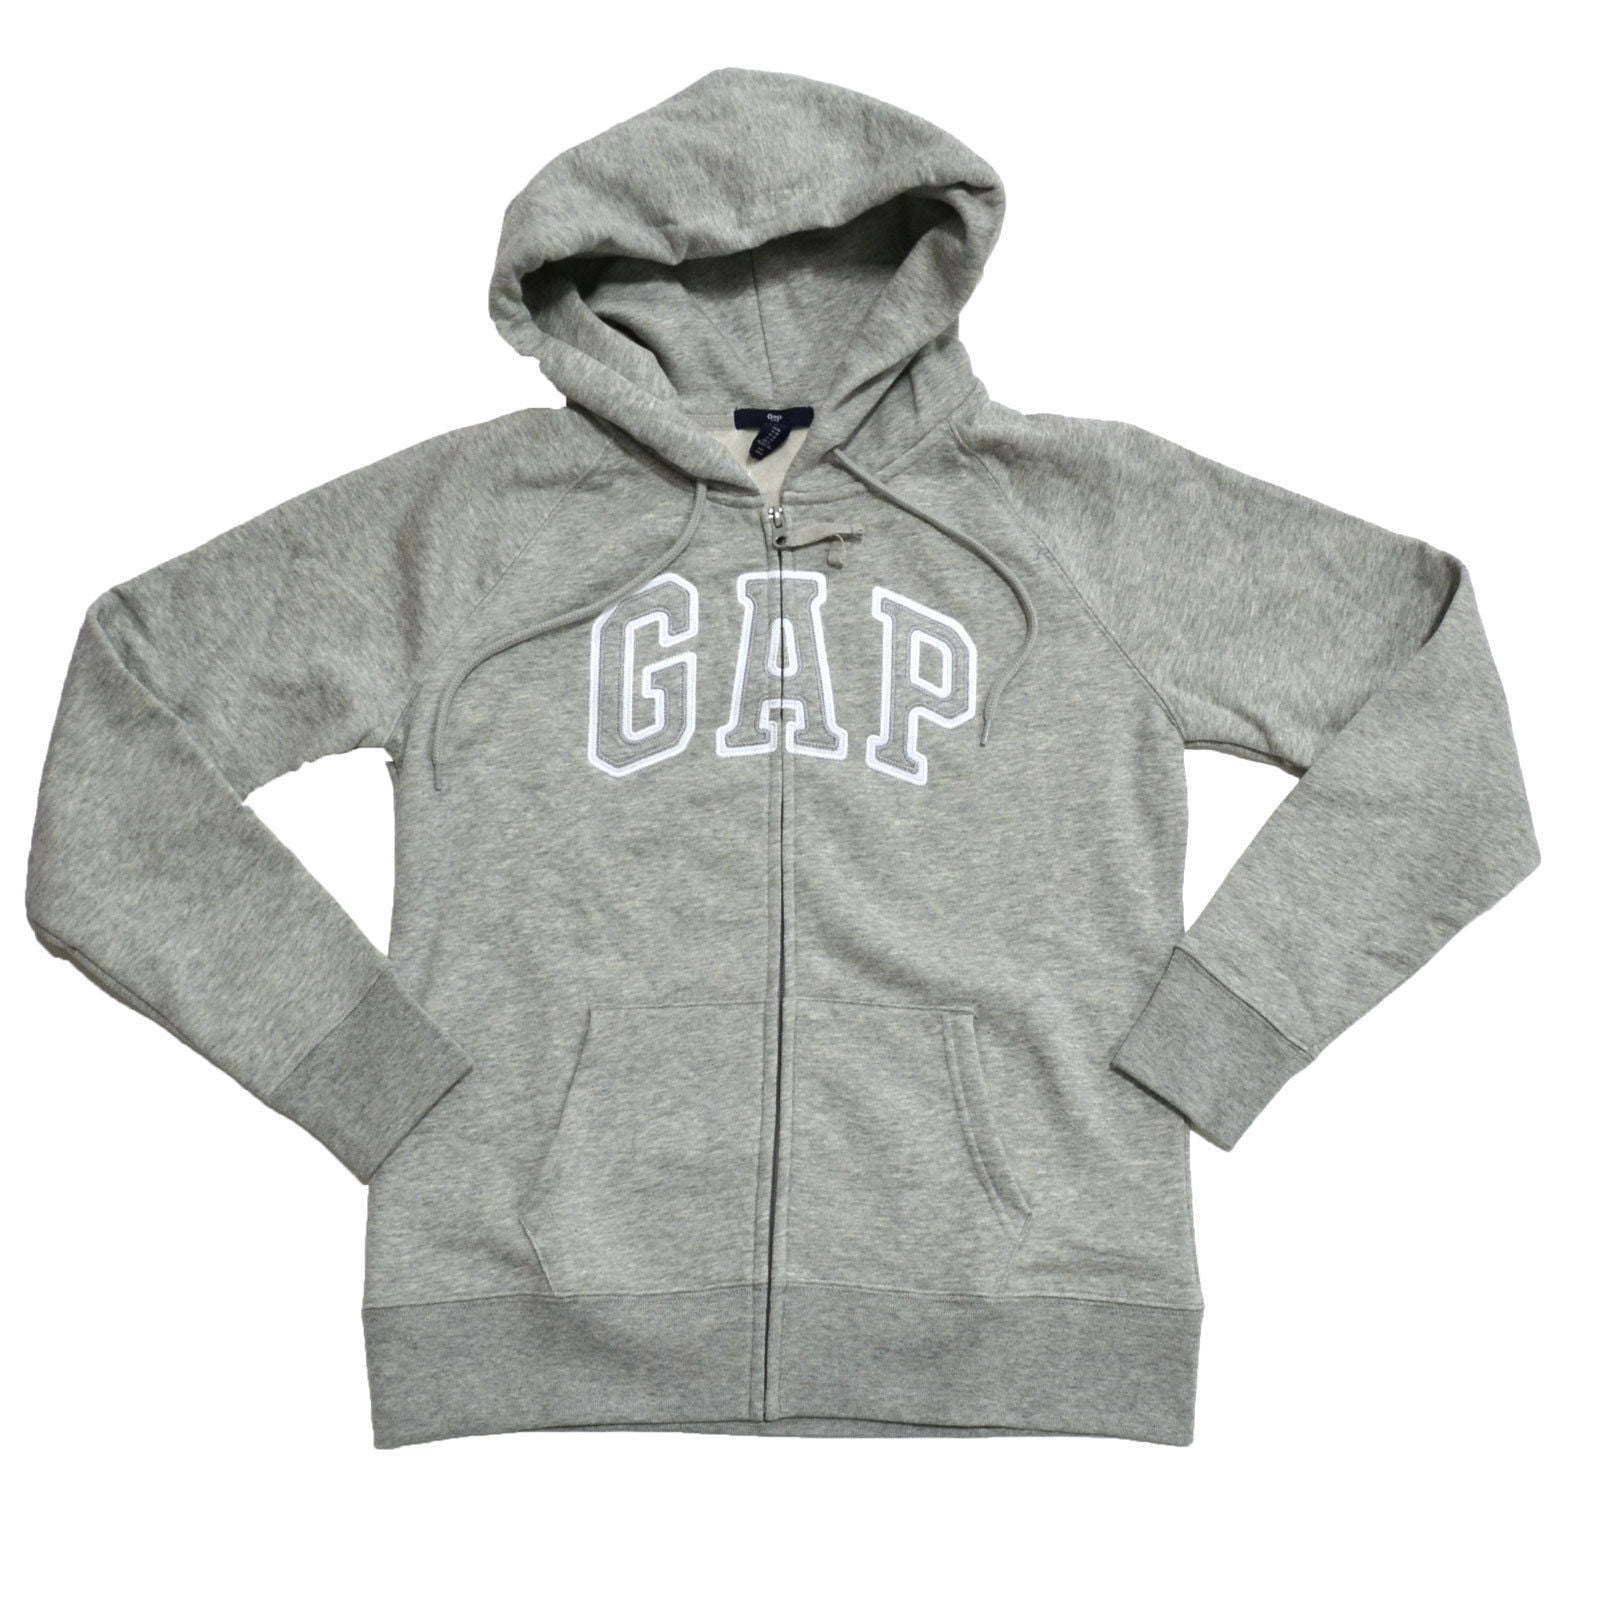 gap zip up hoodie